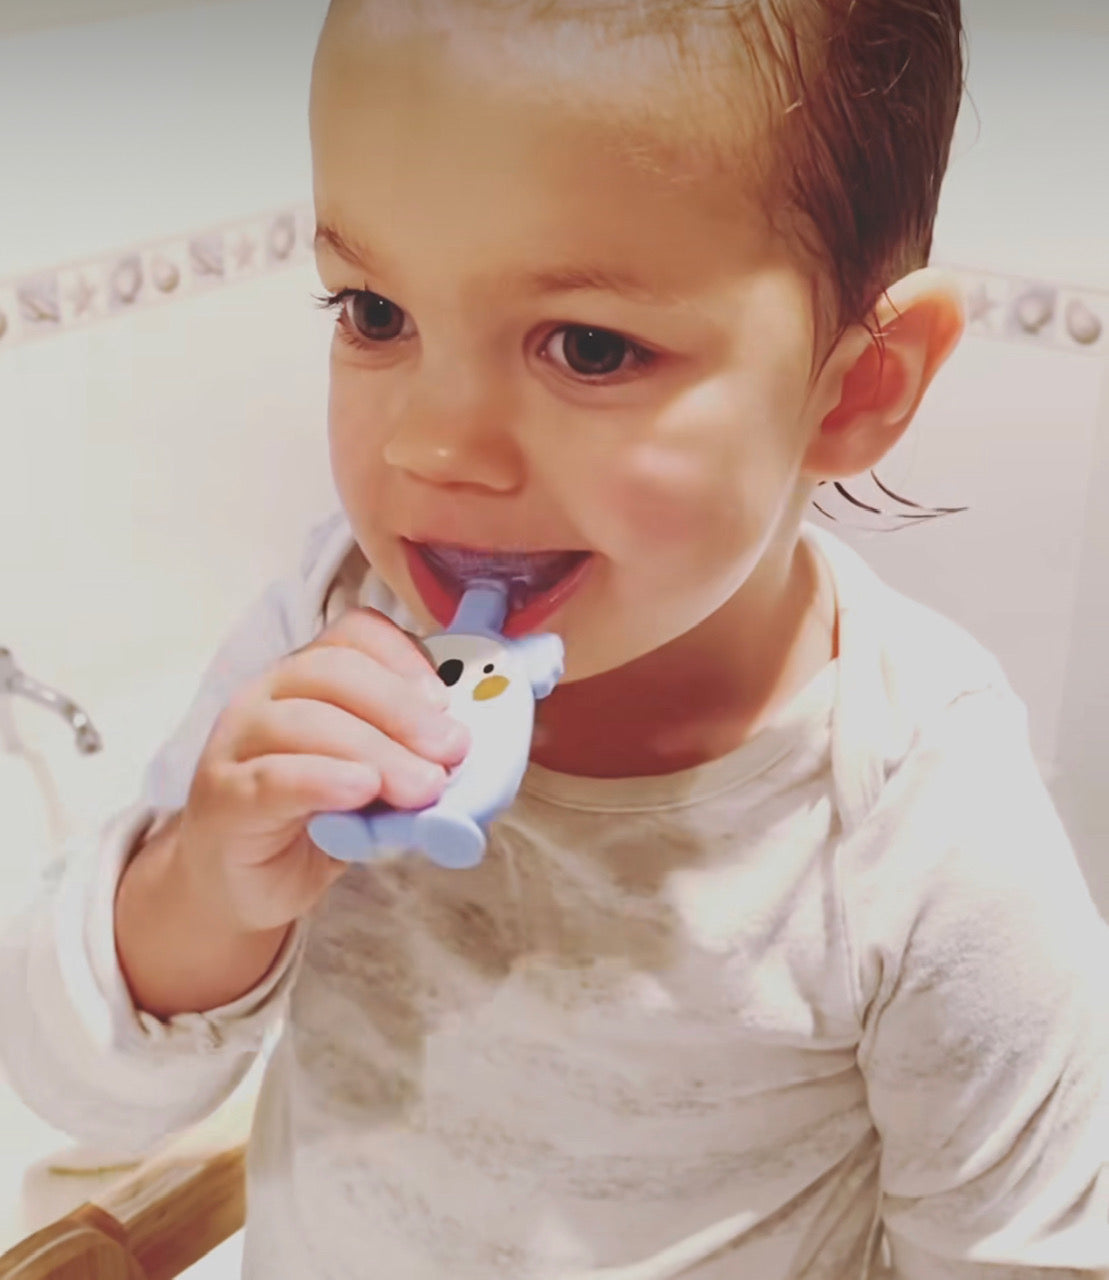 Kids' Toothbrush That Makes Brushing a Joyful Experience